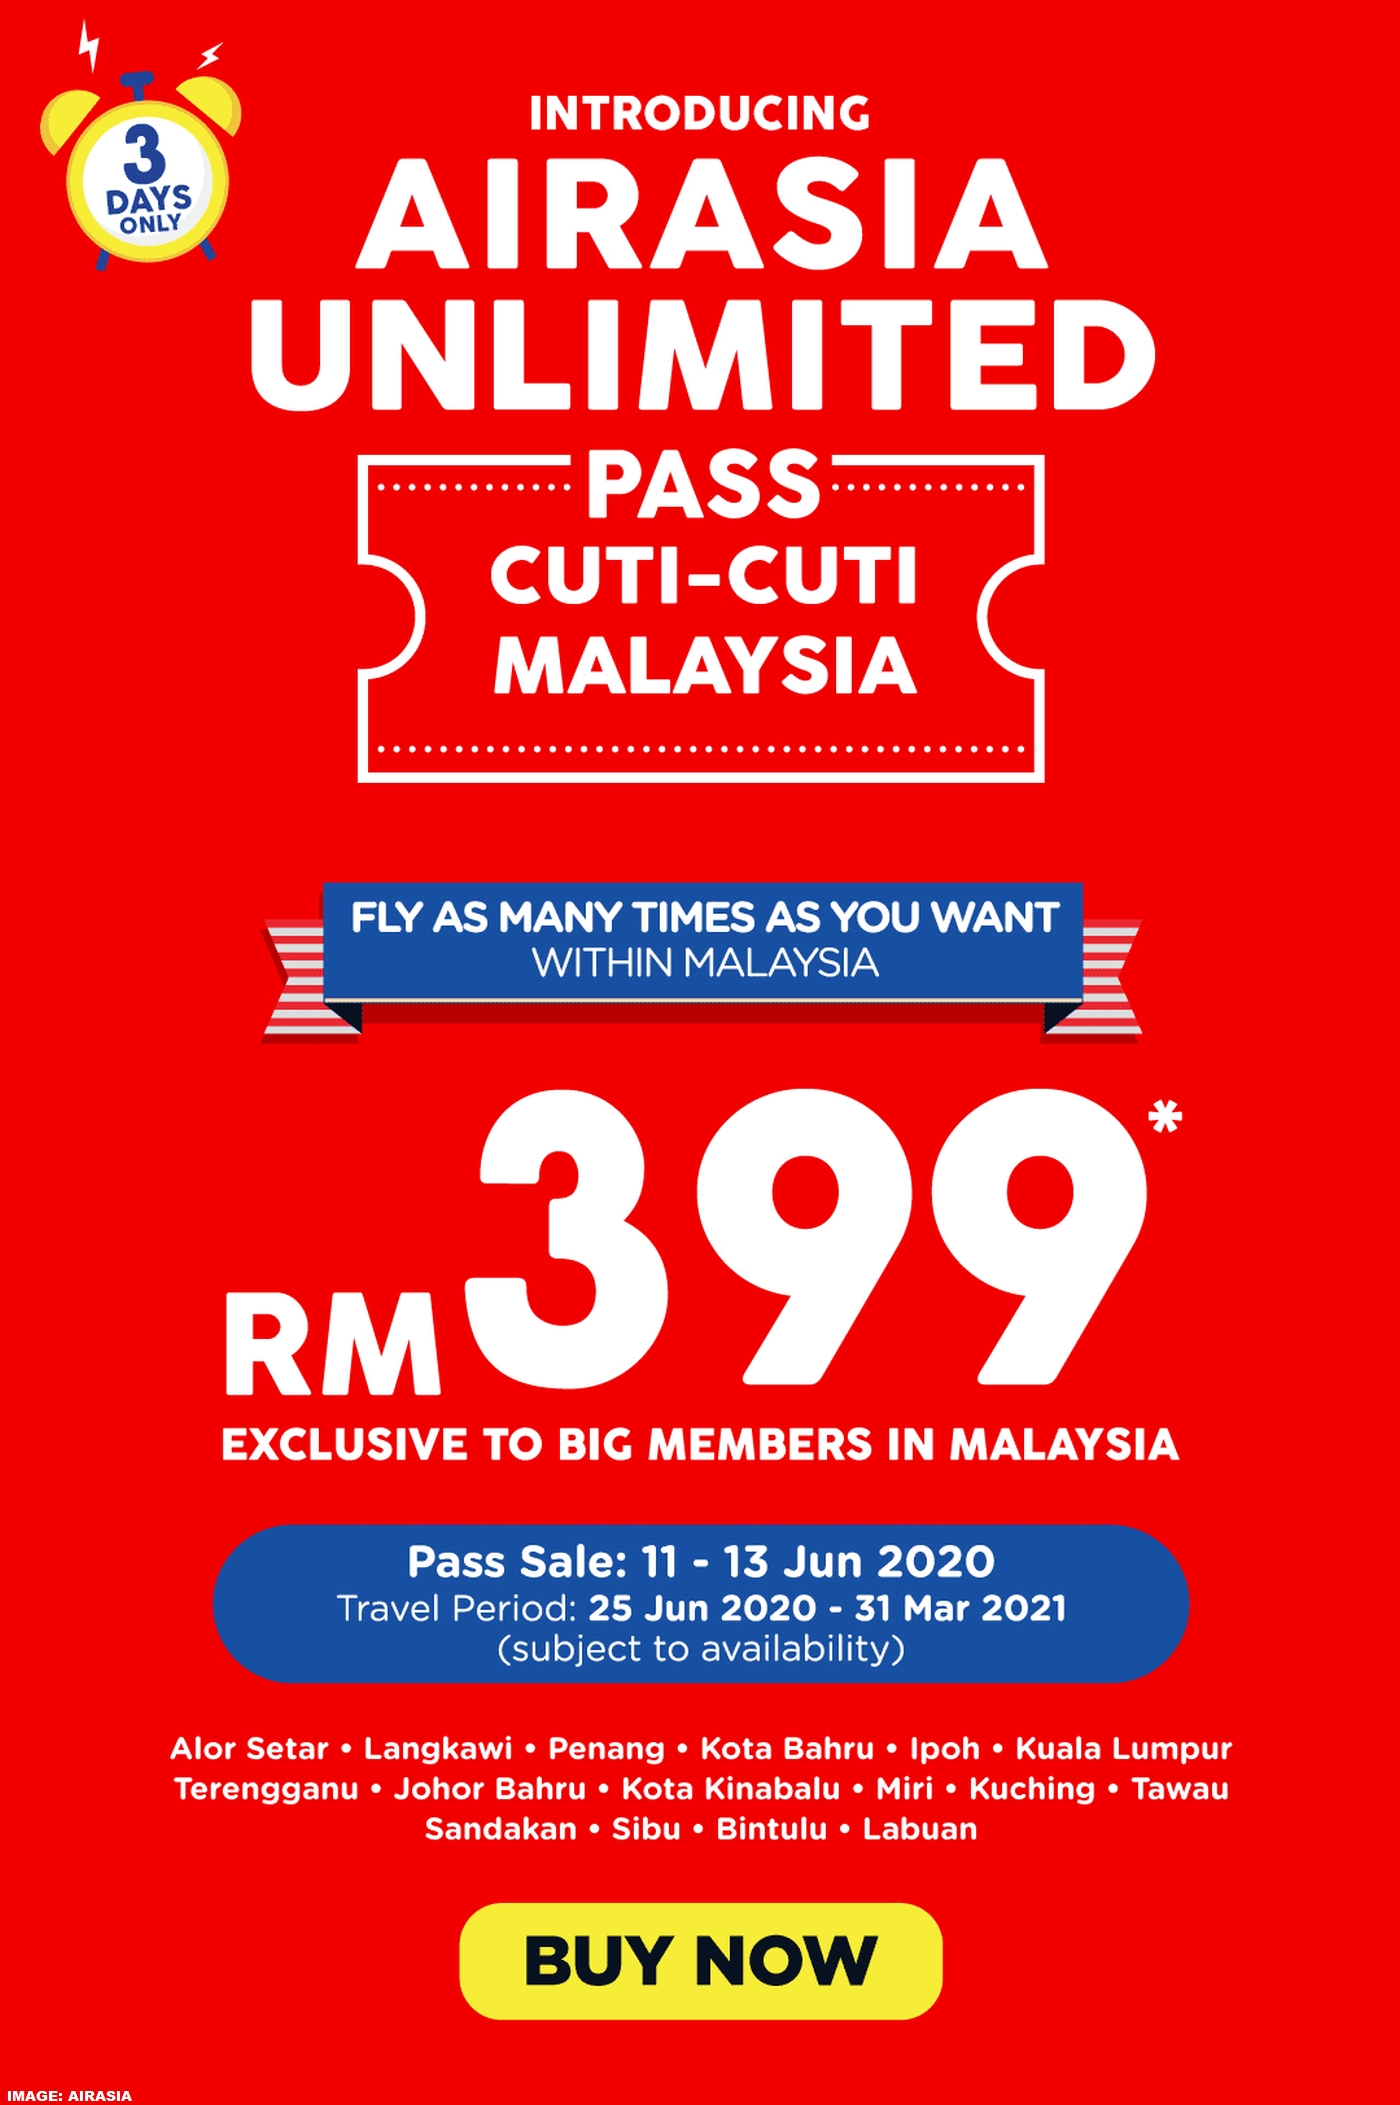 Airasia Unlimited Pass Cuti-Cuti Malaysia For Travel June 25-Kuching School Holidays 2021